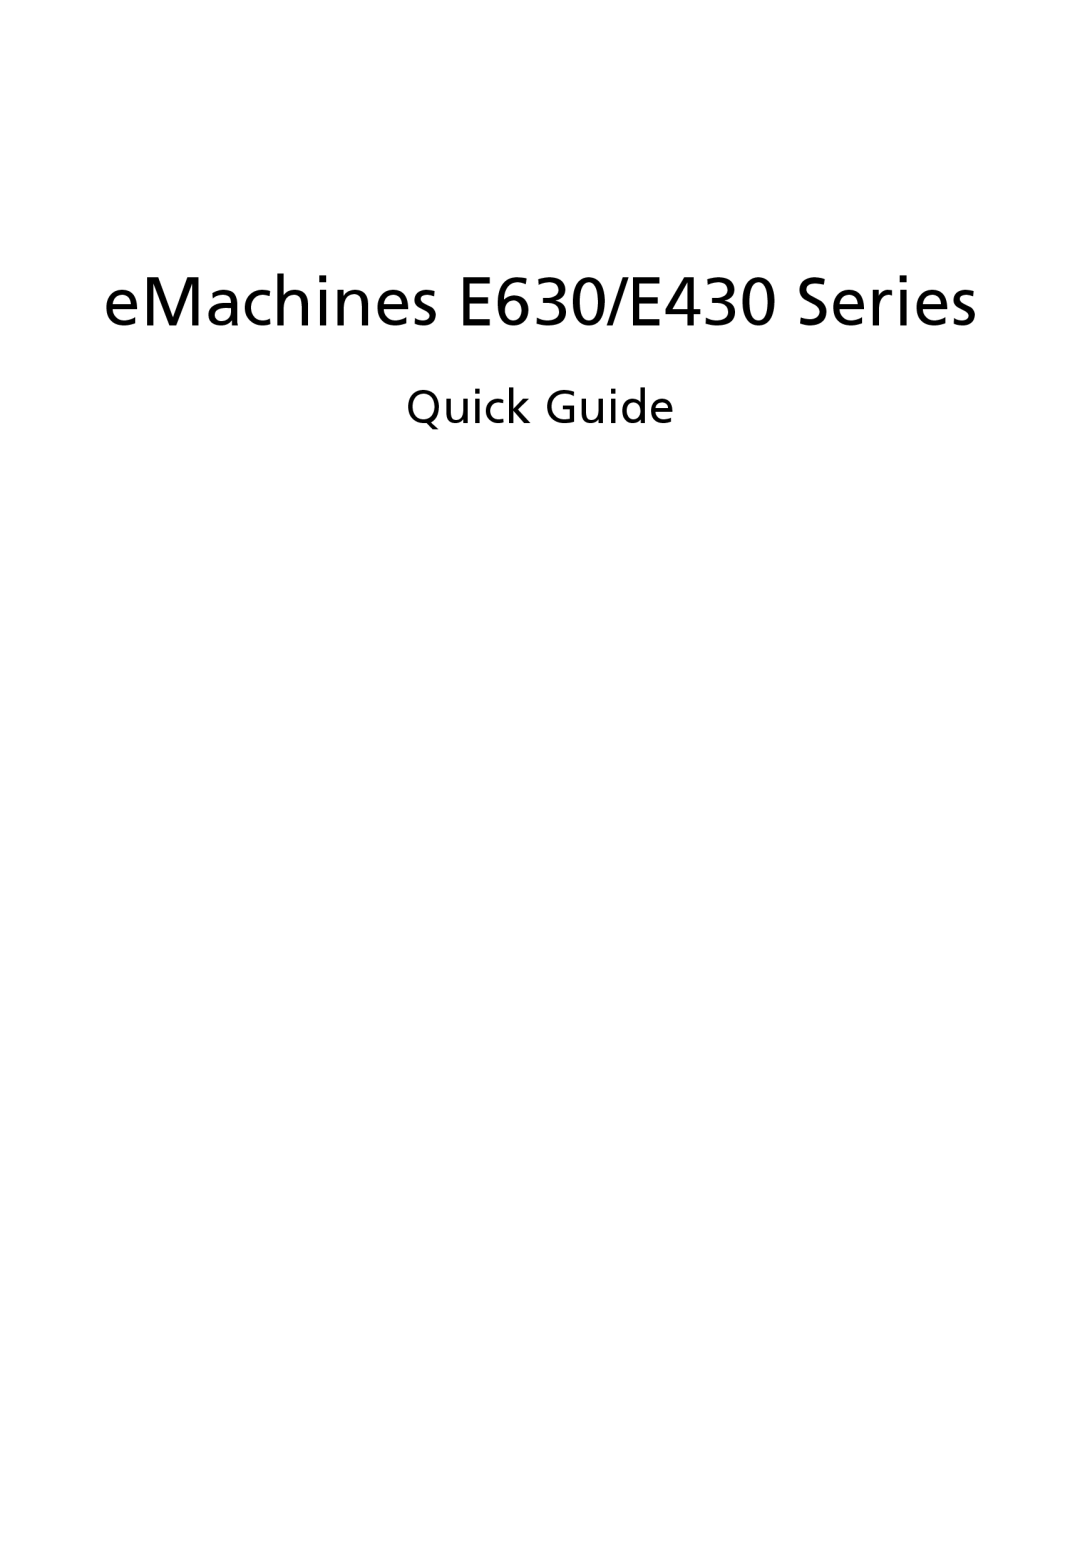 eMachines E630 Series manual Quick Guide, eMachines E630/E430 Series 